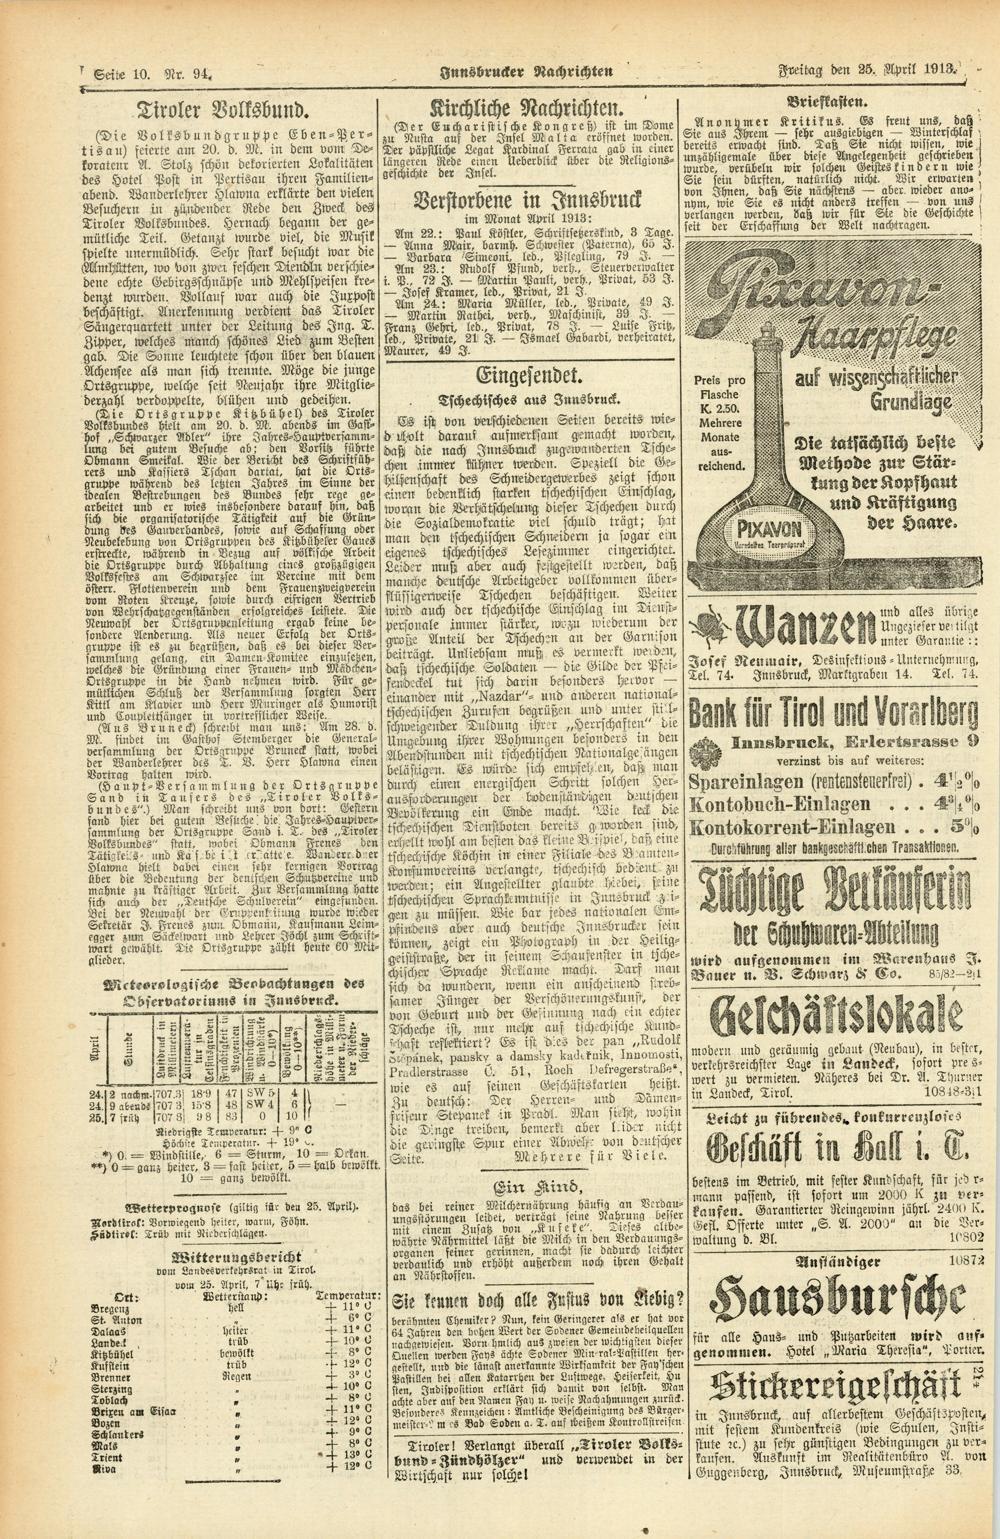 TSeite 10. Nr. 94, k - - Tiroler Volksbund. (Die Volksbundgruppe Eben - Pertisau) feierte am 20. d. M. in dem vom De korateur A.